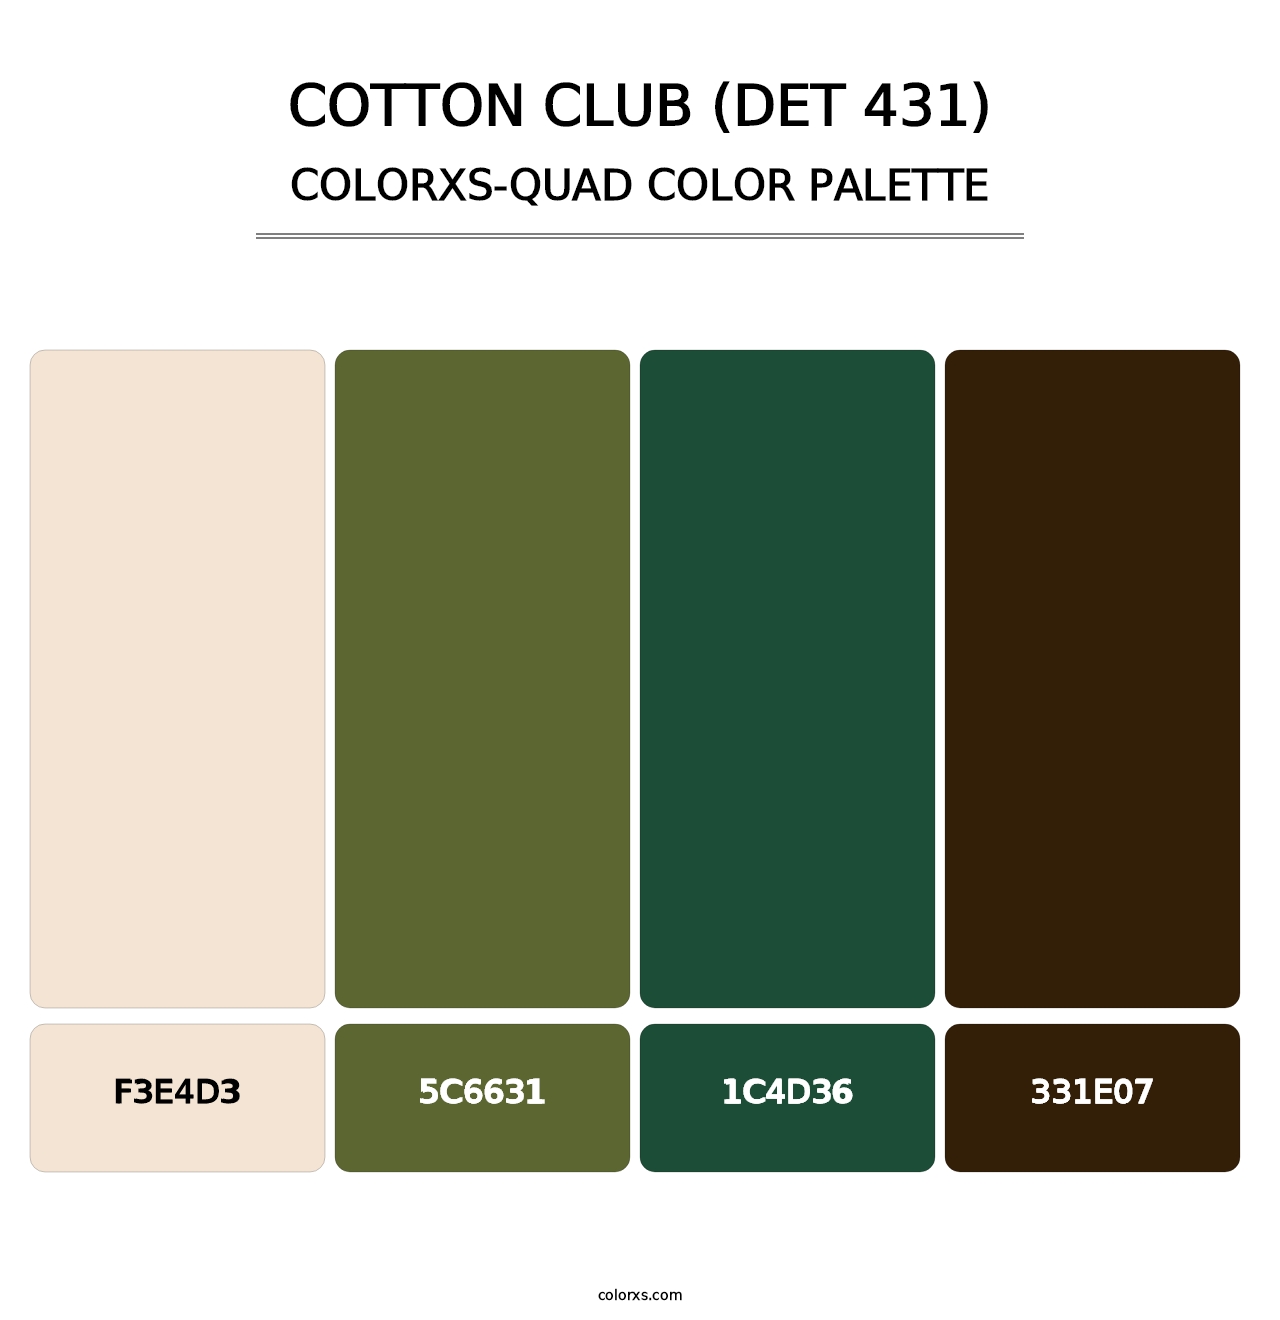 Cotton Club (DET 431) - Colorxs Quad Palette